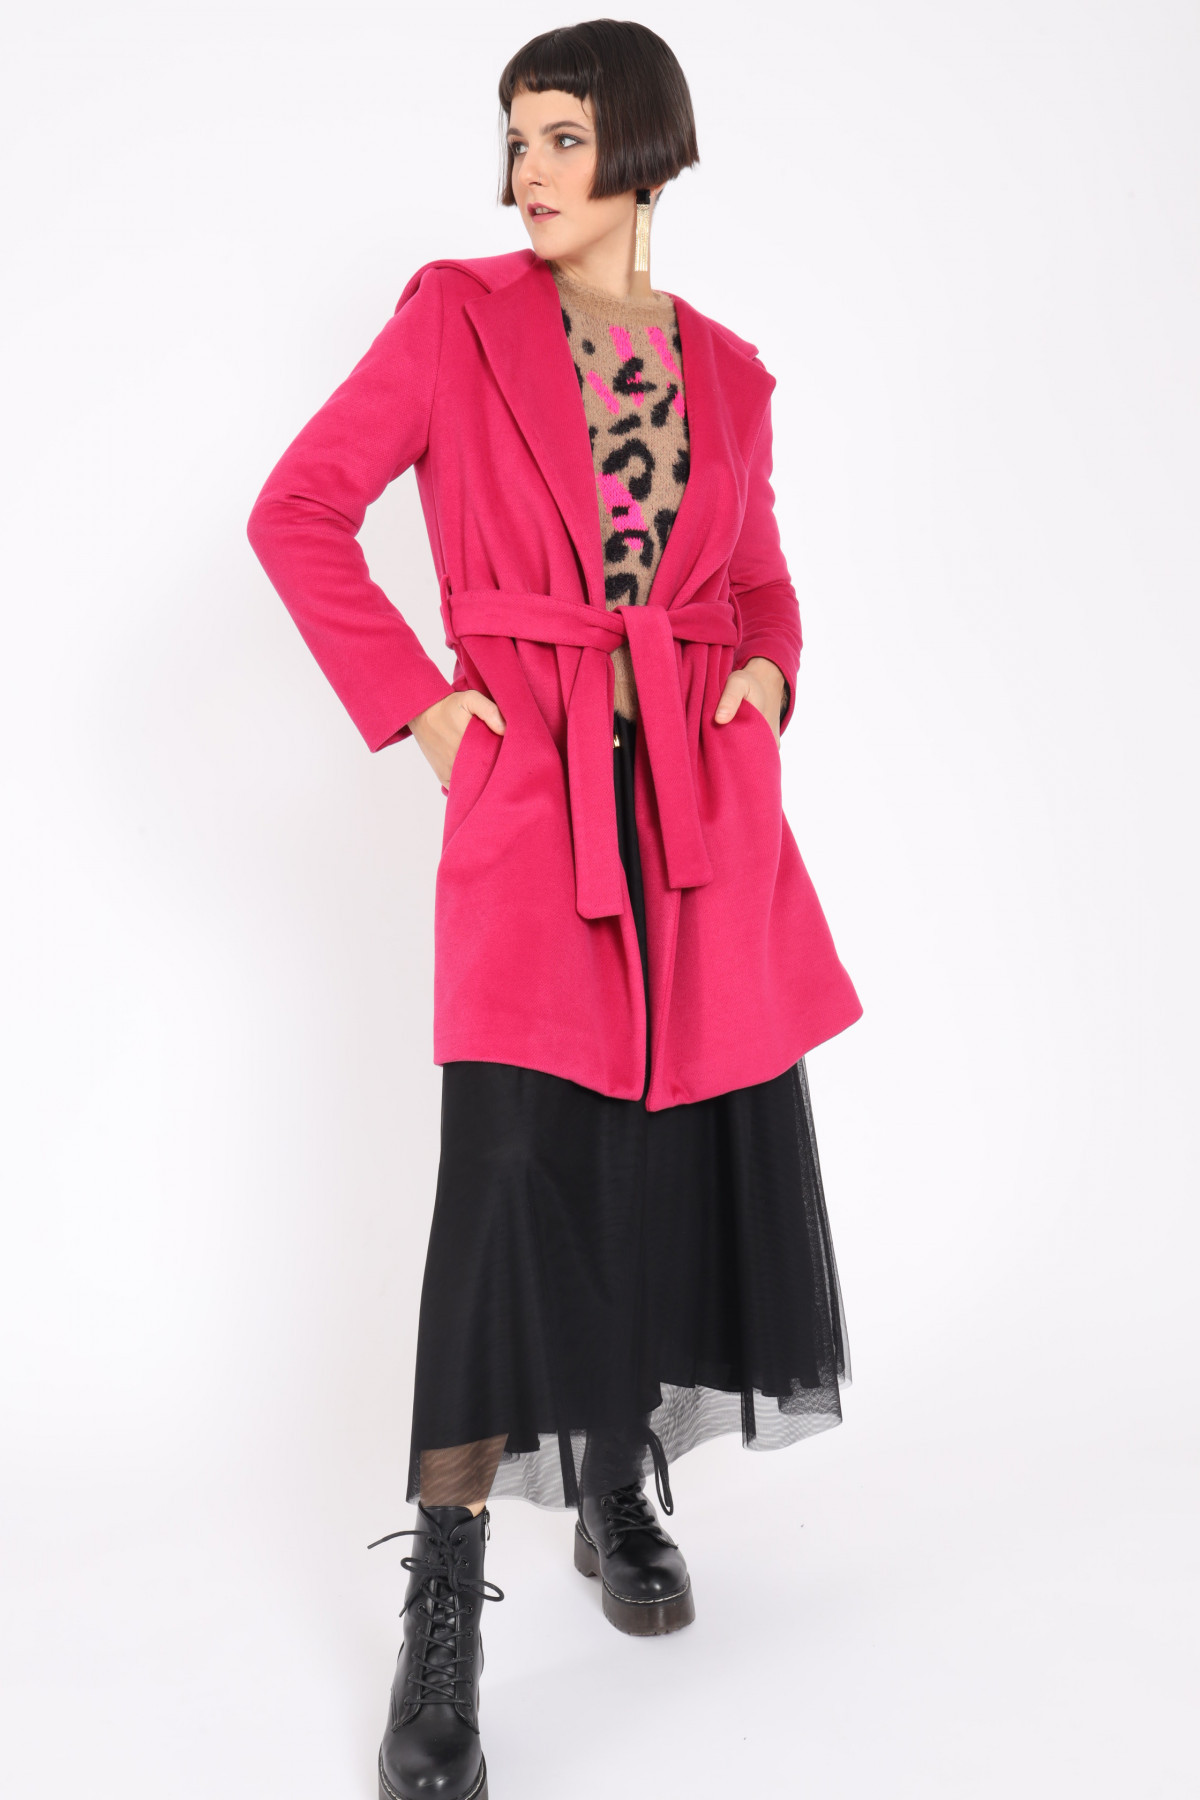 Mantel mit Kapuze und Gürtel in passender Farbe